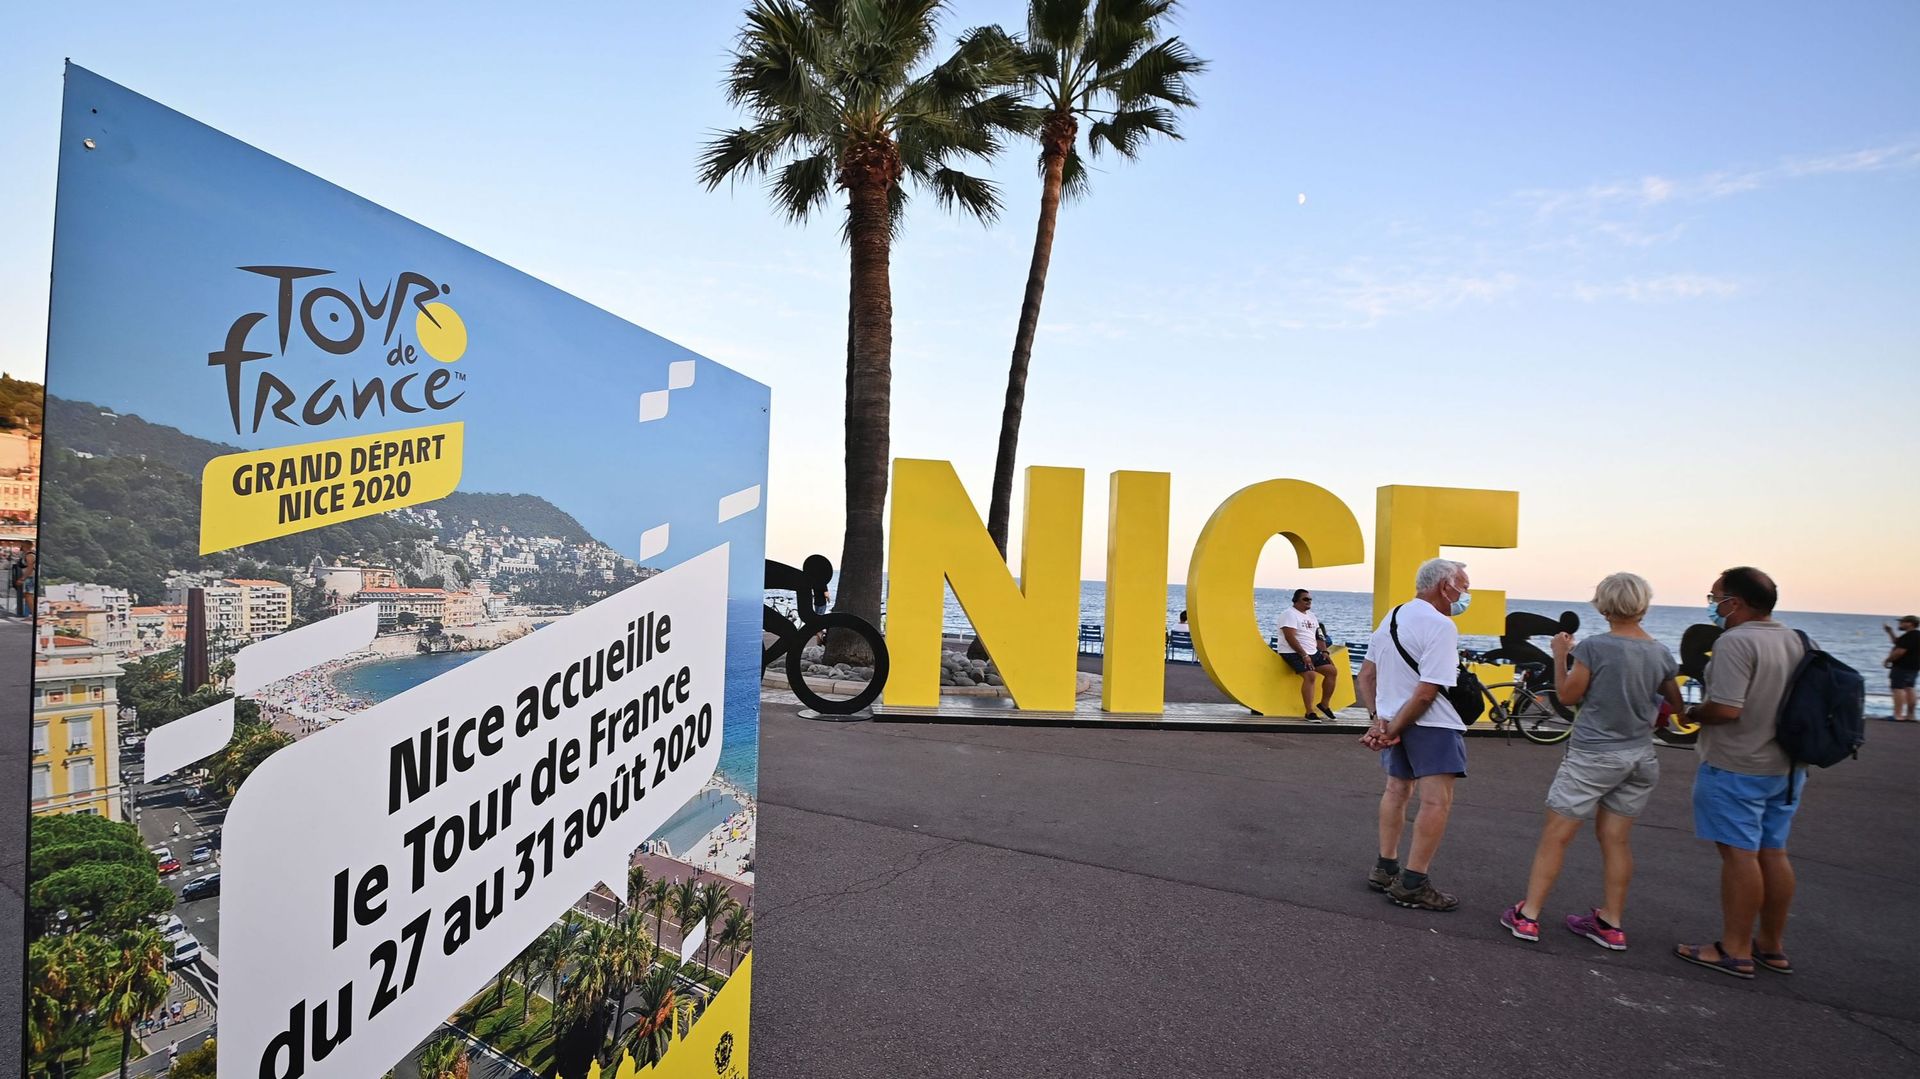 Le Tour de France arrivera à Nice en 2024, désertant la région parisienne pour la première fois de son histoire en raison des Jeux Olympiques, ont indiqué la ville de Nice et les organisateurs de la Grande Boucle jeudi lors d’une conférence de presse.